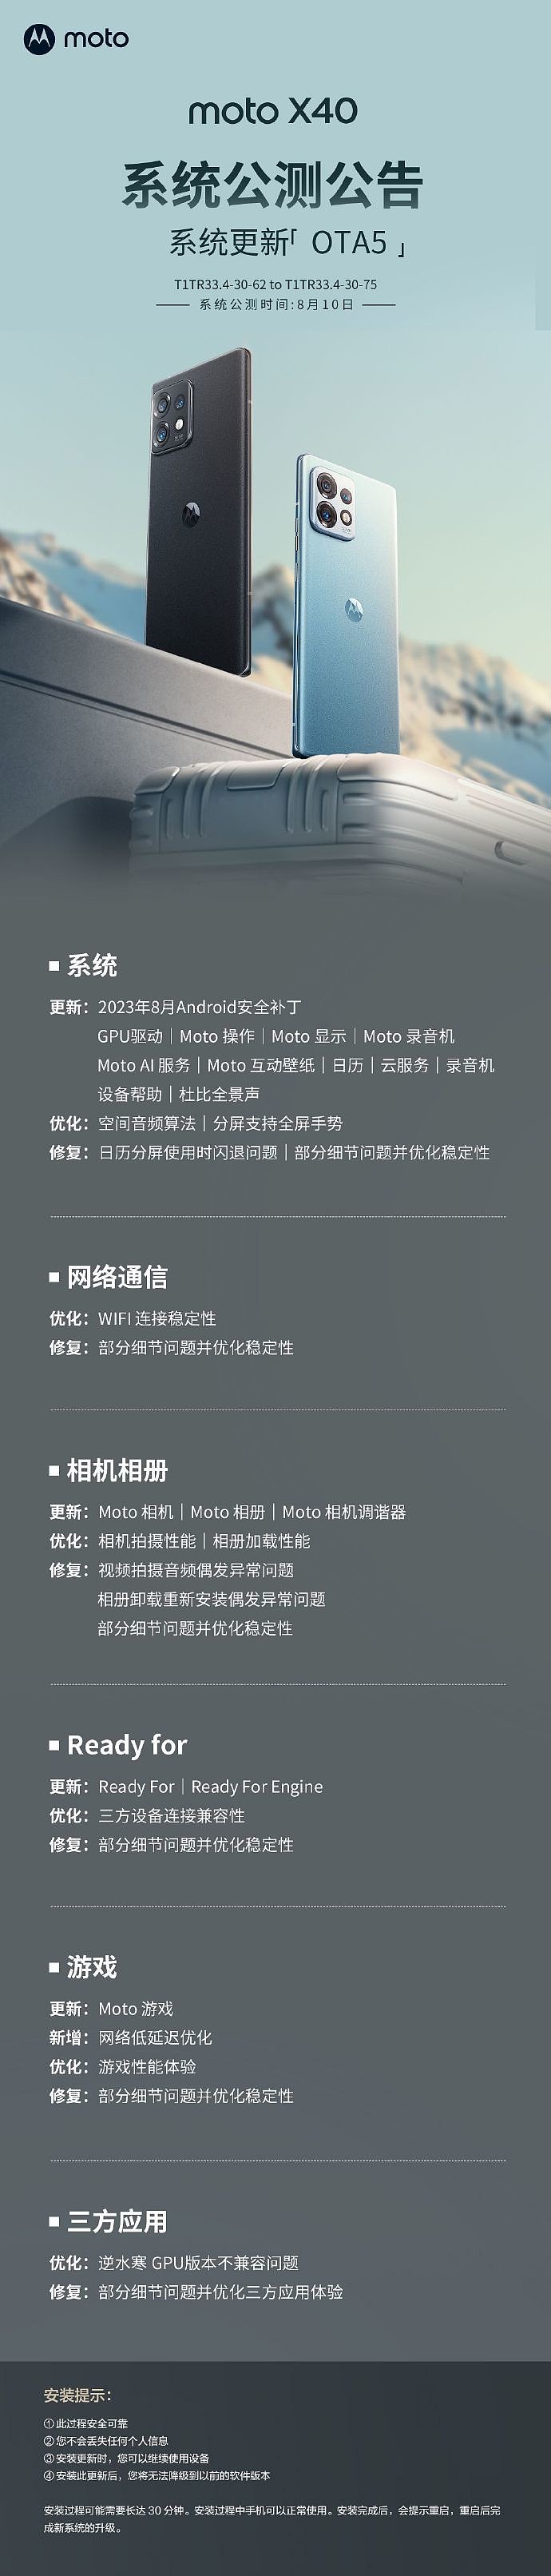 摩托罗拉 X40 手机 OTA5 更新：新增分屏全屏手势，修复逆水寒 GPU 版本不兼容问题 - 1